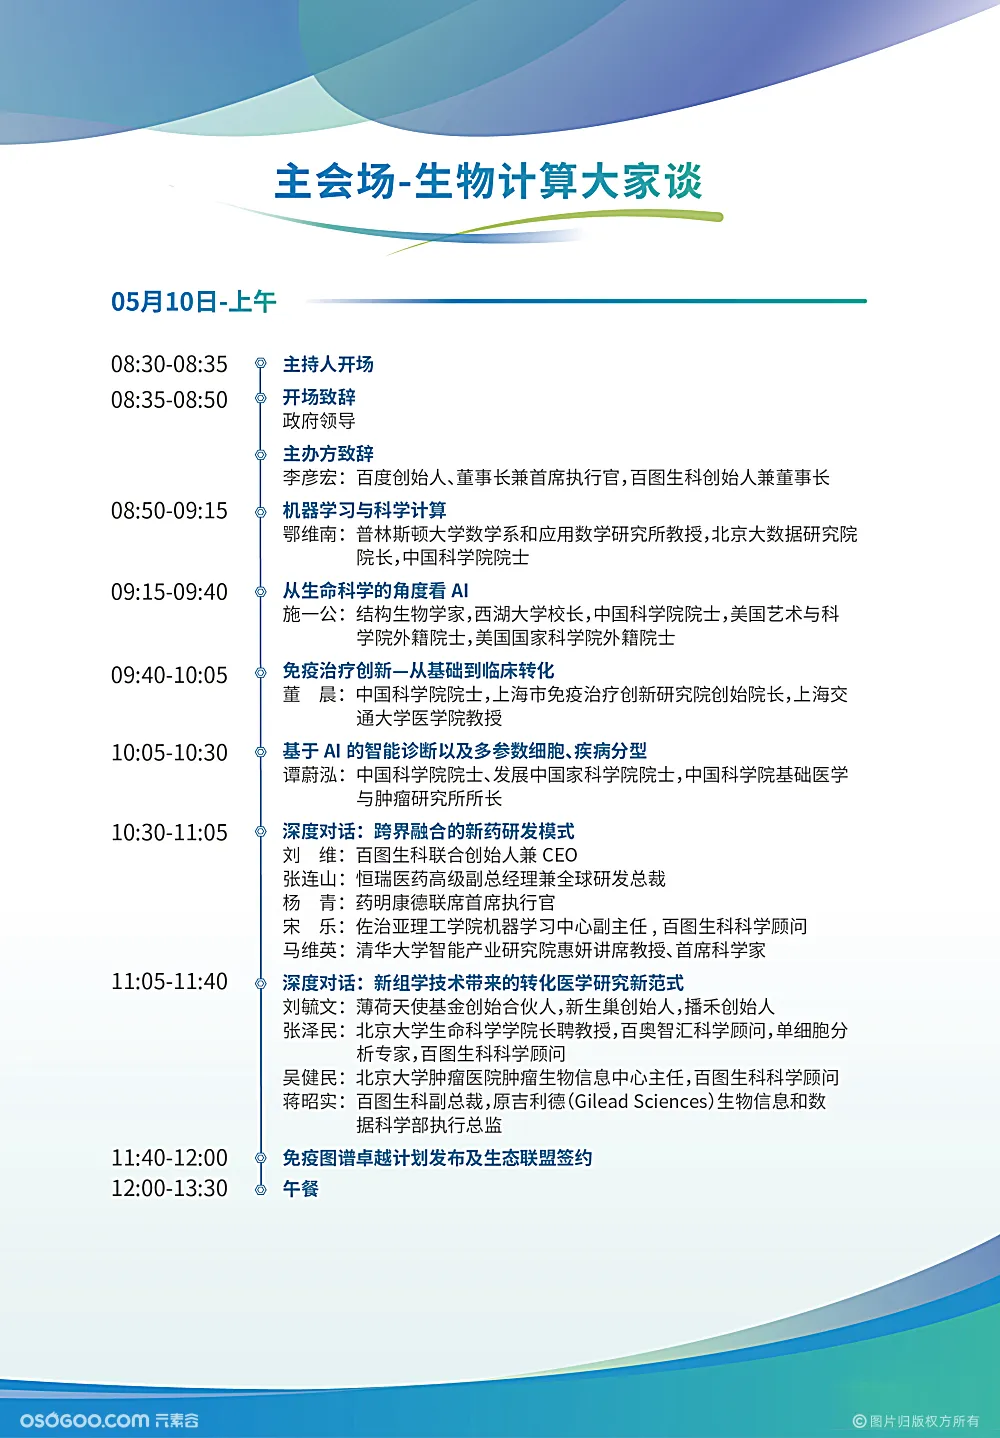 首届中国生物计算大会由华圣科技提供现场网络支持